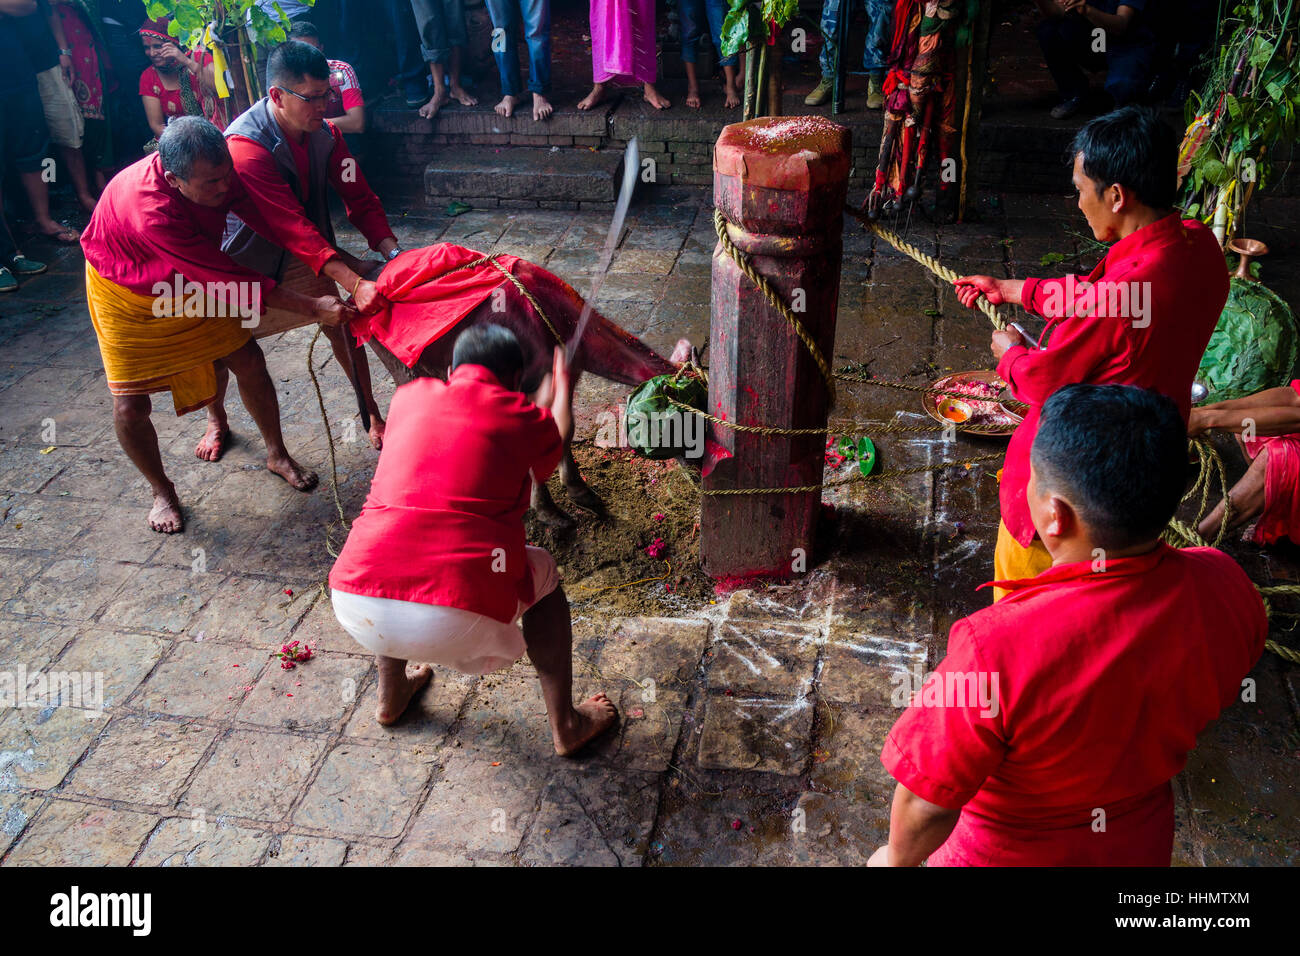 Prêtre avec grande épée sacrifier le buffle d'eau, fête hindoue Dashain, Gorakhnath, temple du district de Gorkha, Gorkha, Népal Banque D'Images